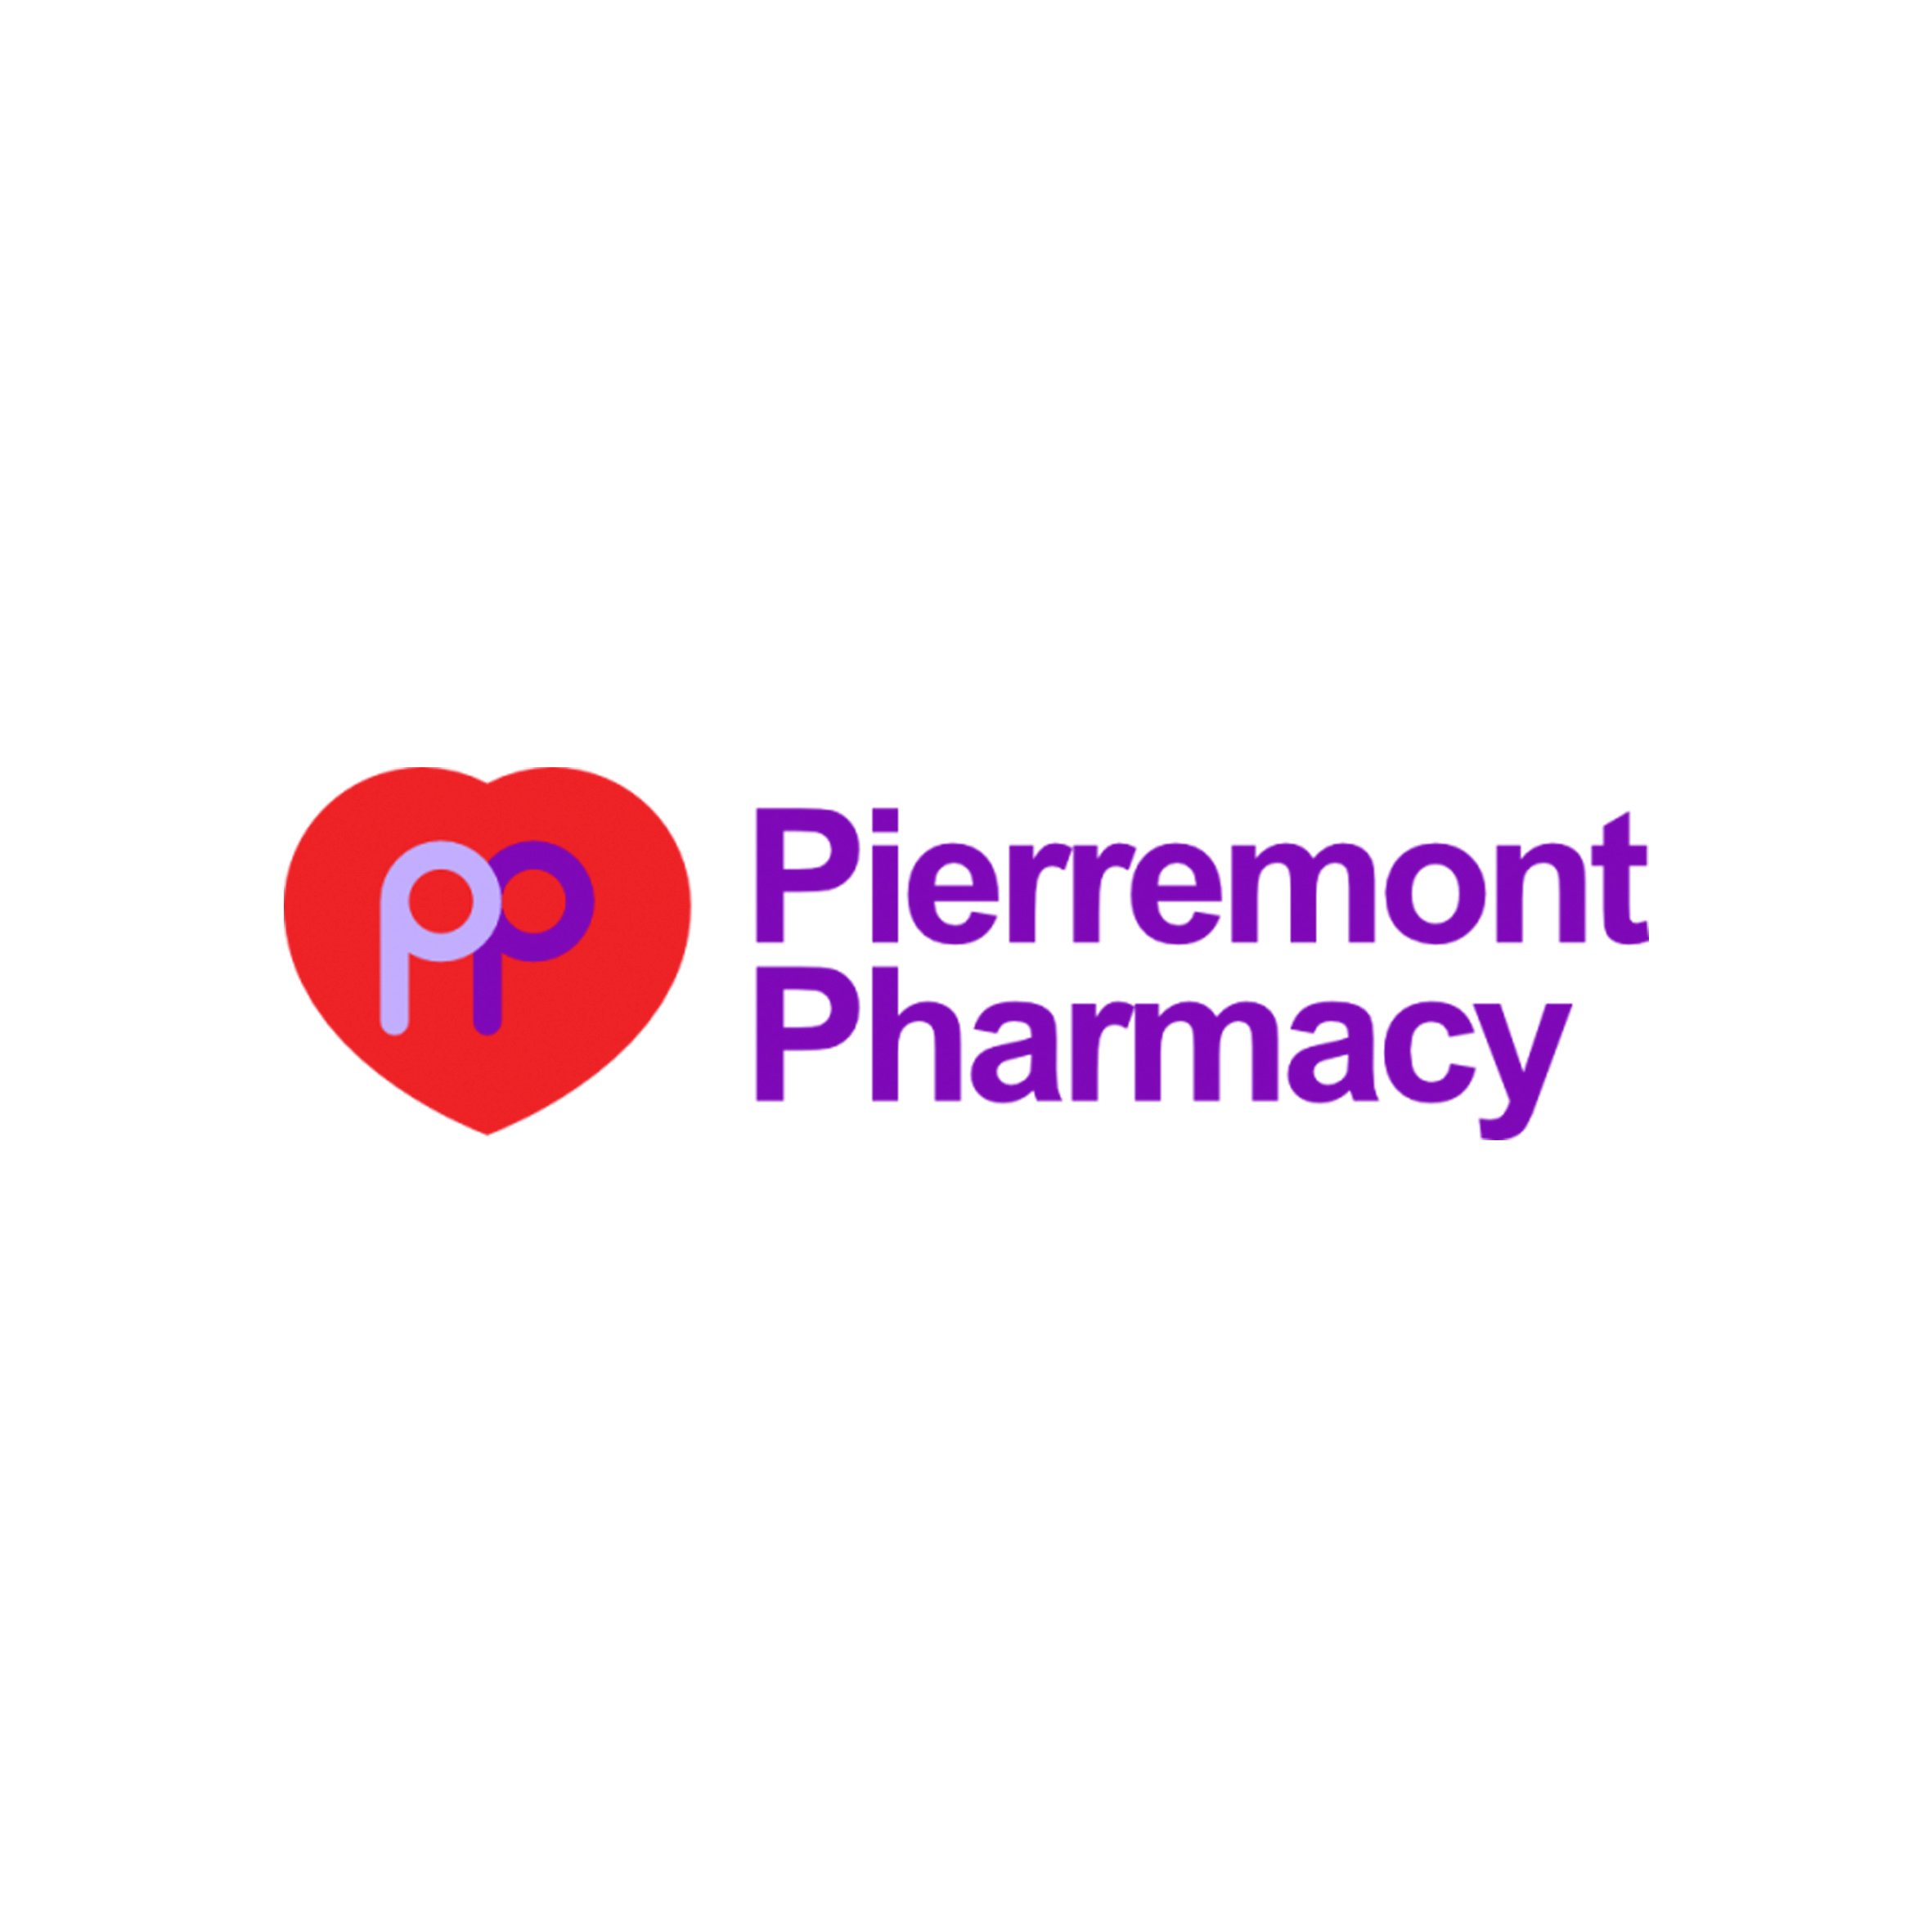 Pierremont Pharmacy Profile